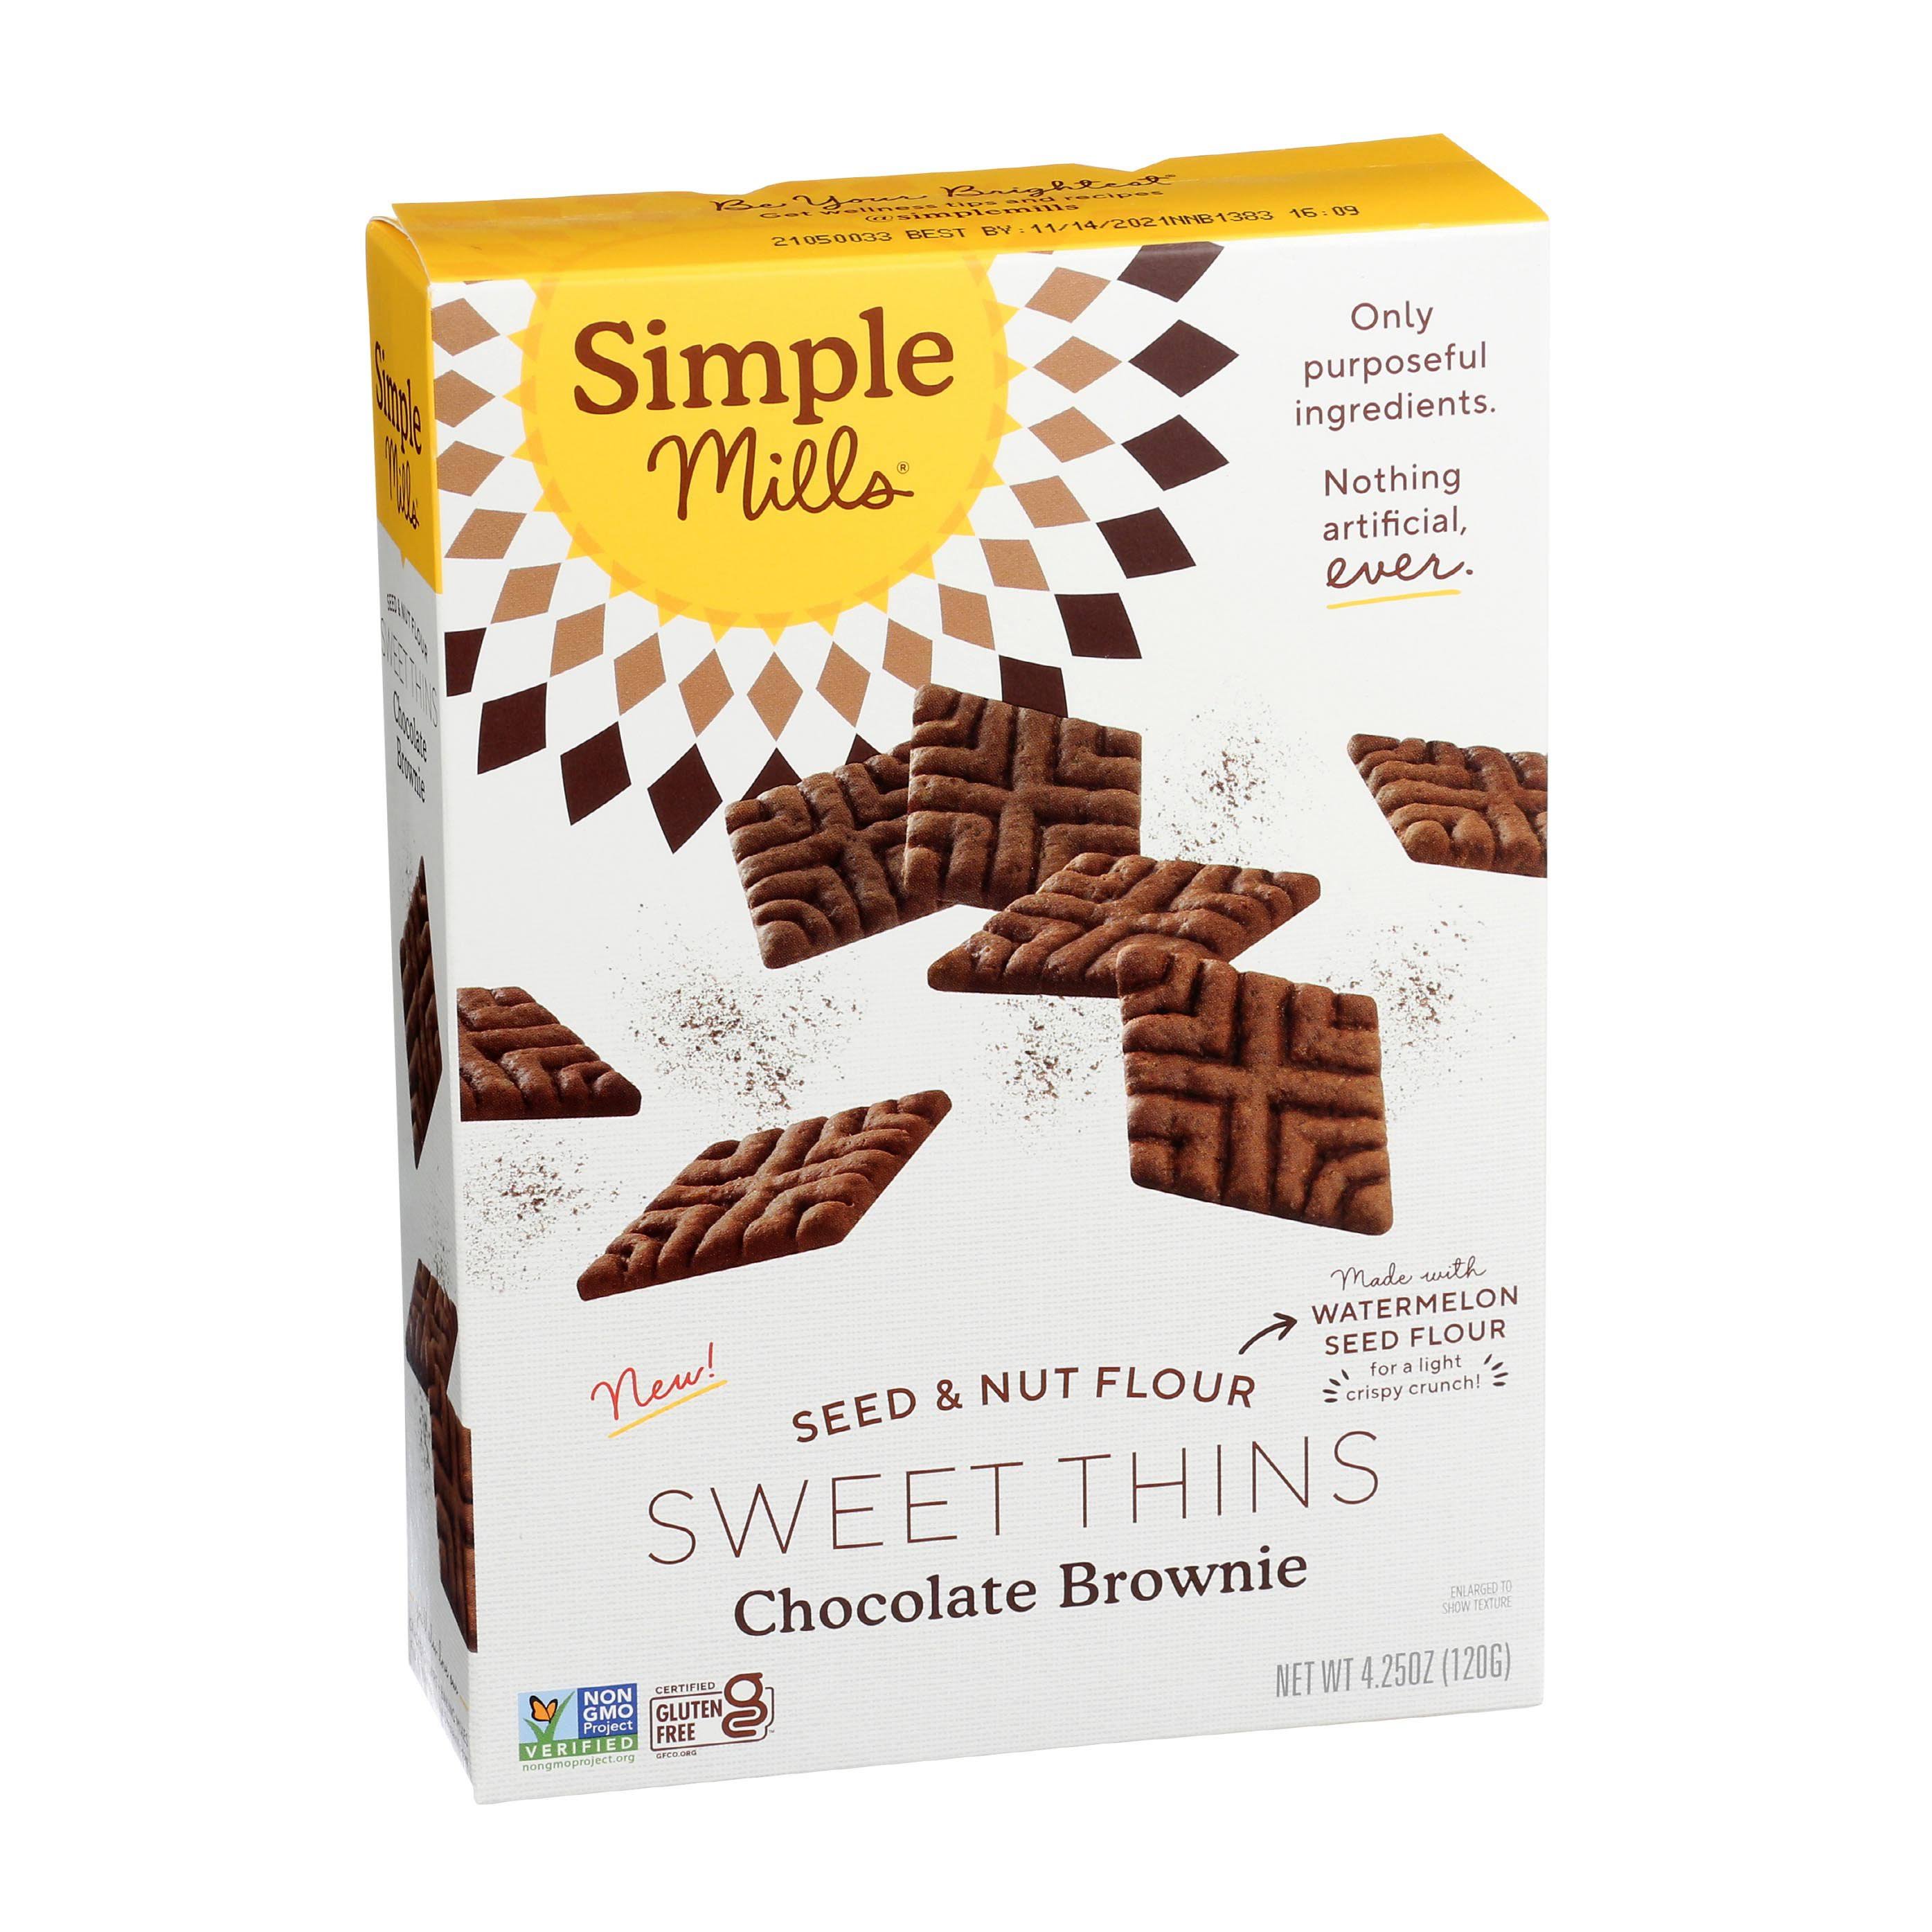 Simple Mills Seed & Nut Flour Sweet Thins Chocolate Brownie 4.25 oz (120 g)